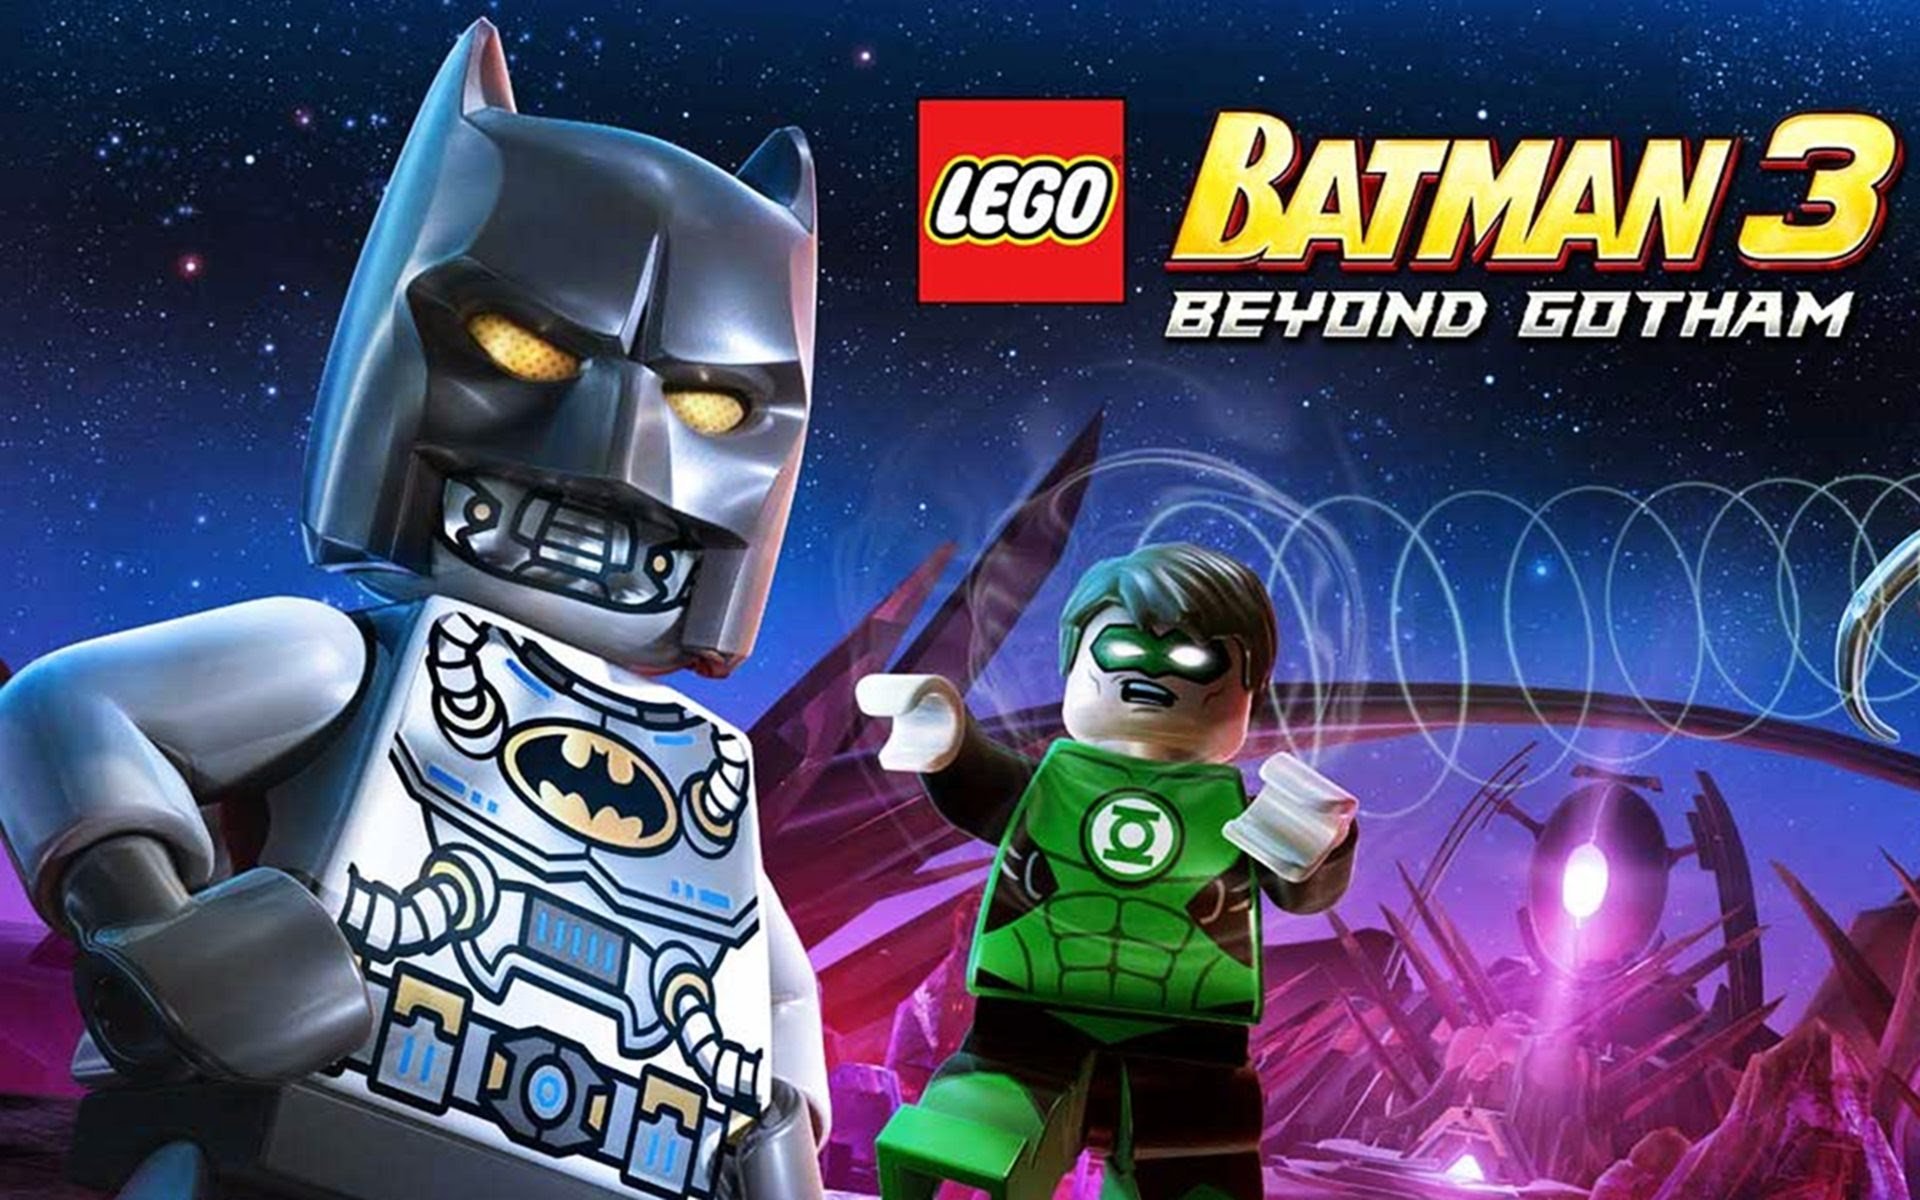 Скачать обои бесплатно Видеоигры, Бэтмен, Супергерой, Лего, Lego Batman 3: Покидая Готэм картинка на рабочий стол ПК